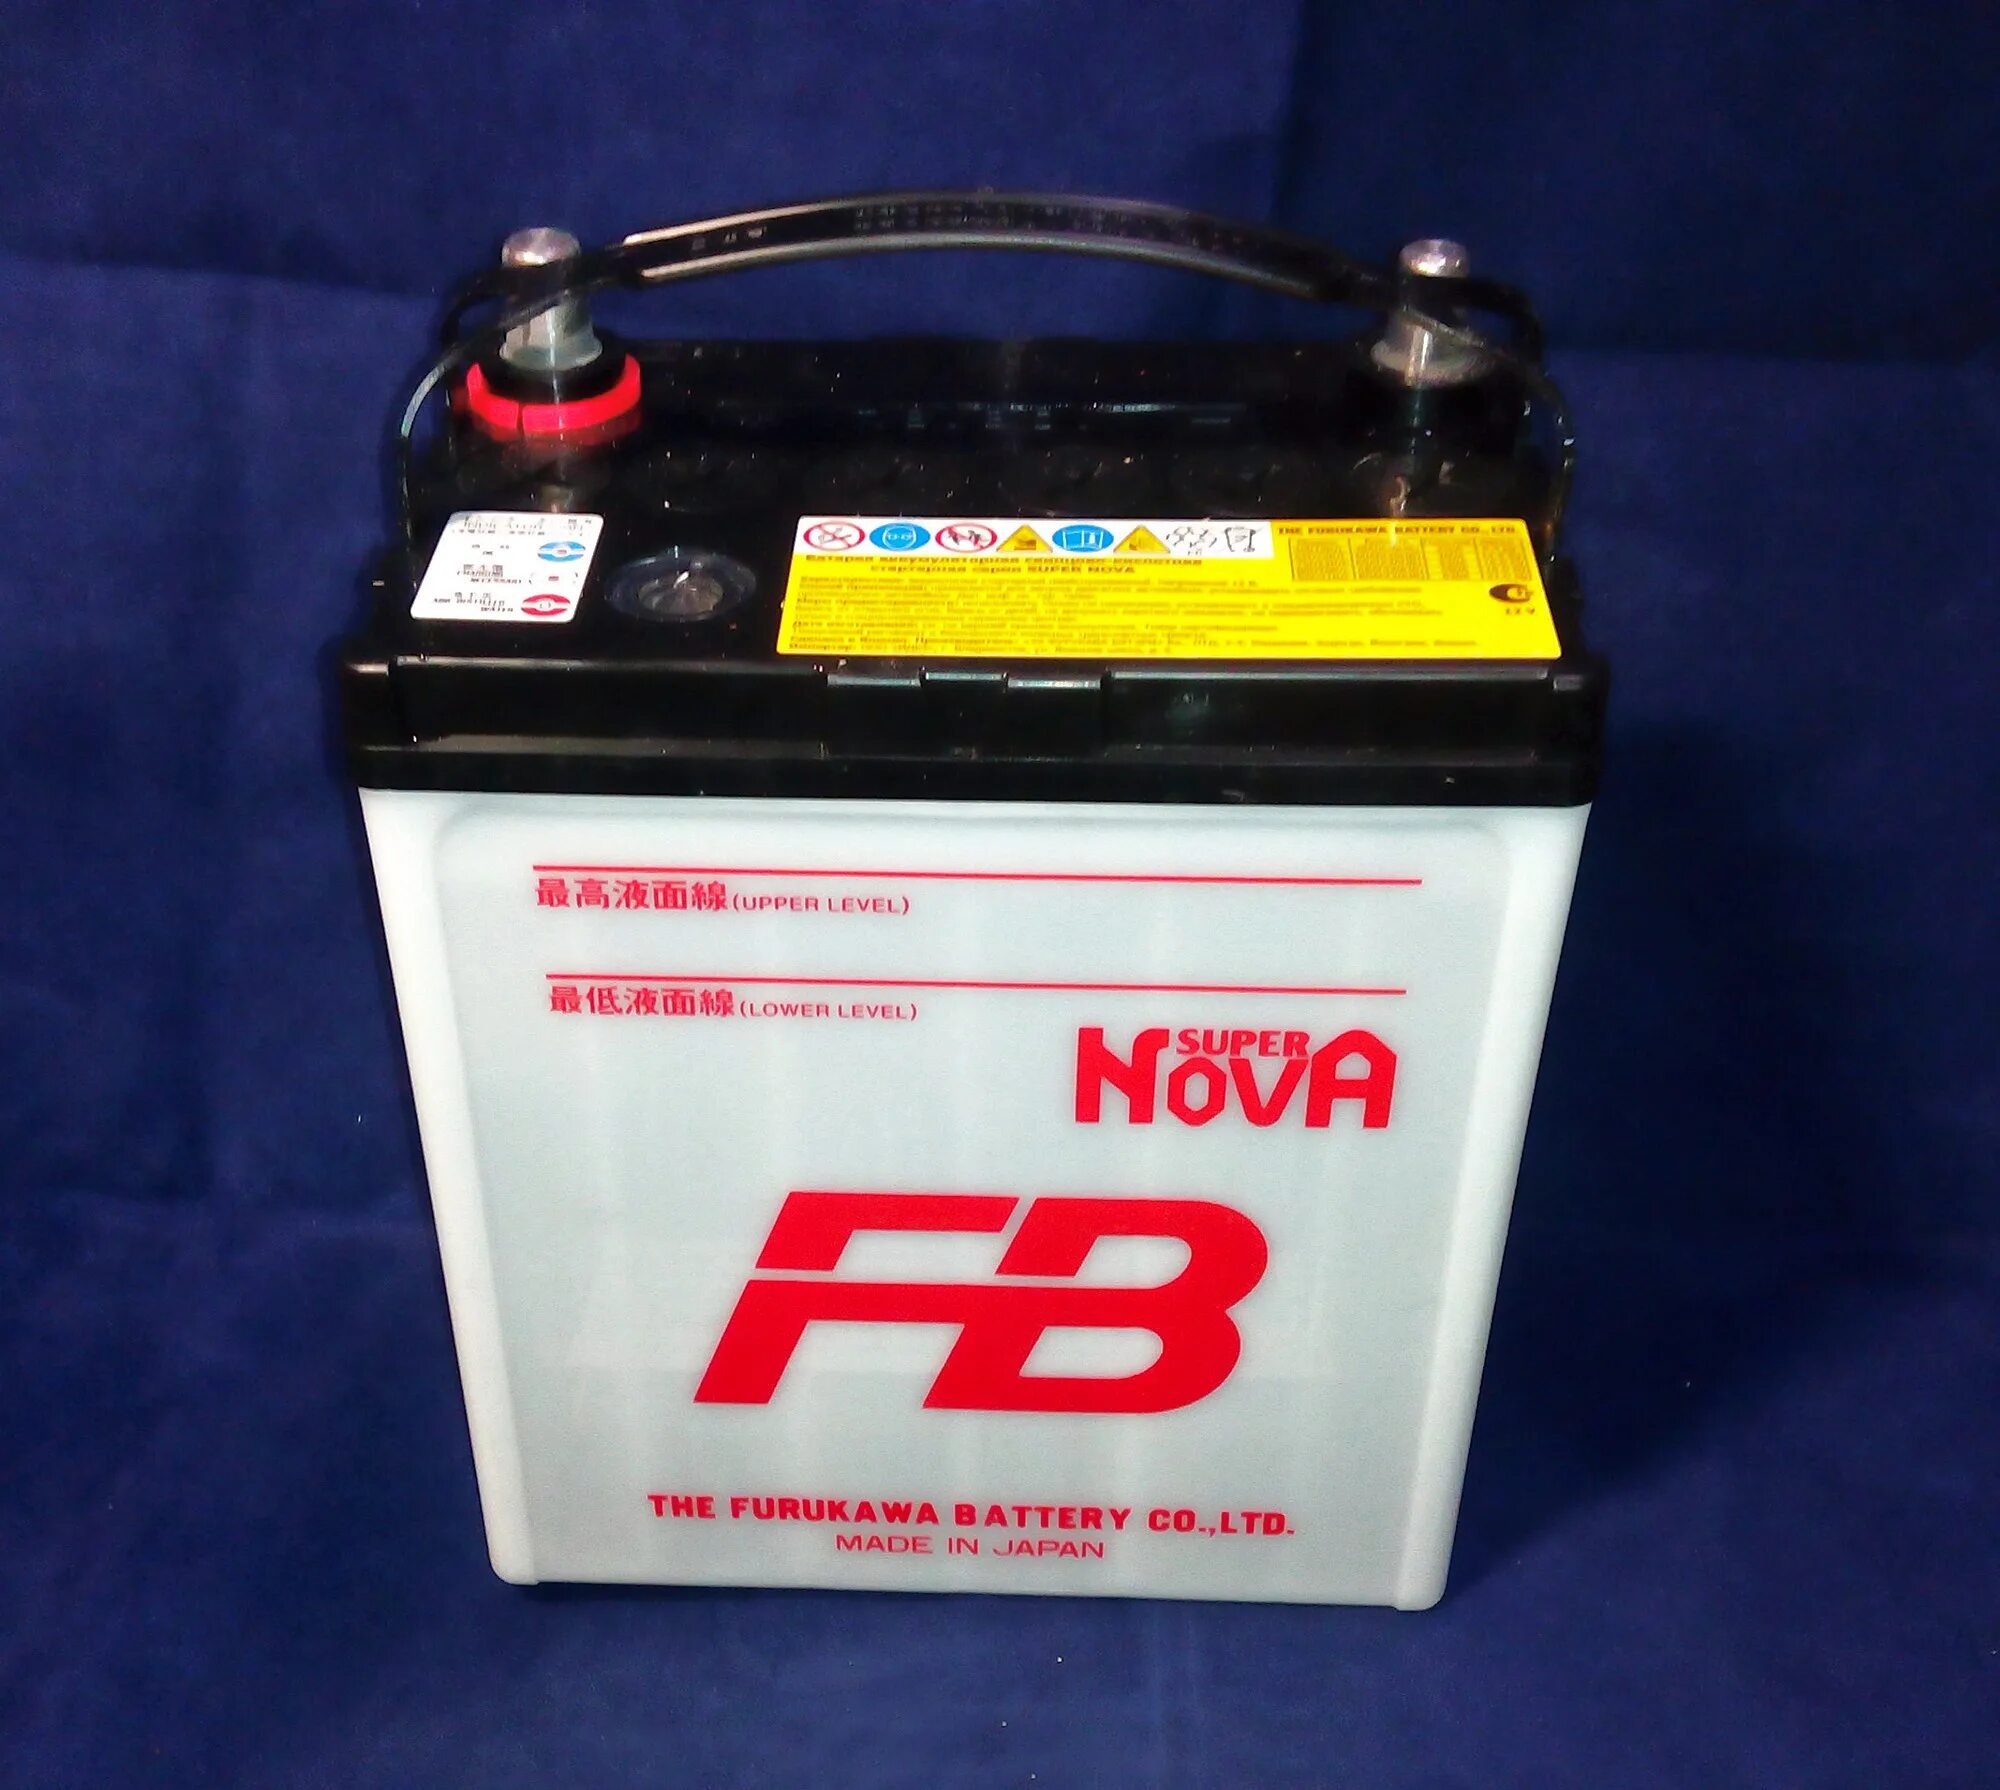 Купить японский аккумулятор. Furukawa Battery fb super Nova 40b19l. Furukawa аккумулятор fb super Nova. Аккумулятор Furukawa 40b19l. Furukawa battery40b19lбатарея аккумуляторная "fb super Nova", 12в 38а/ч.